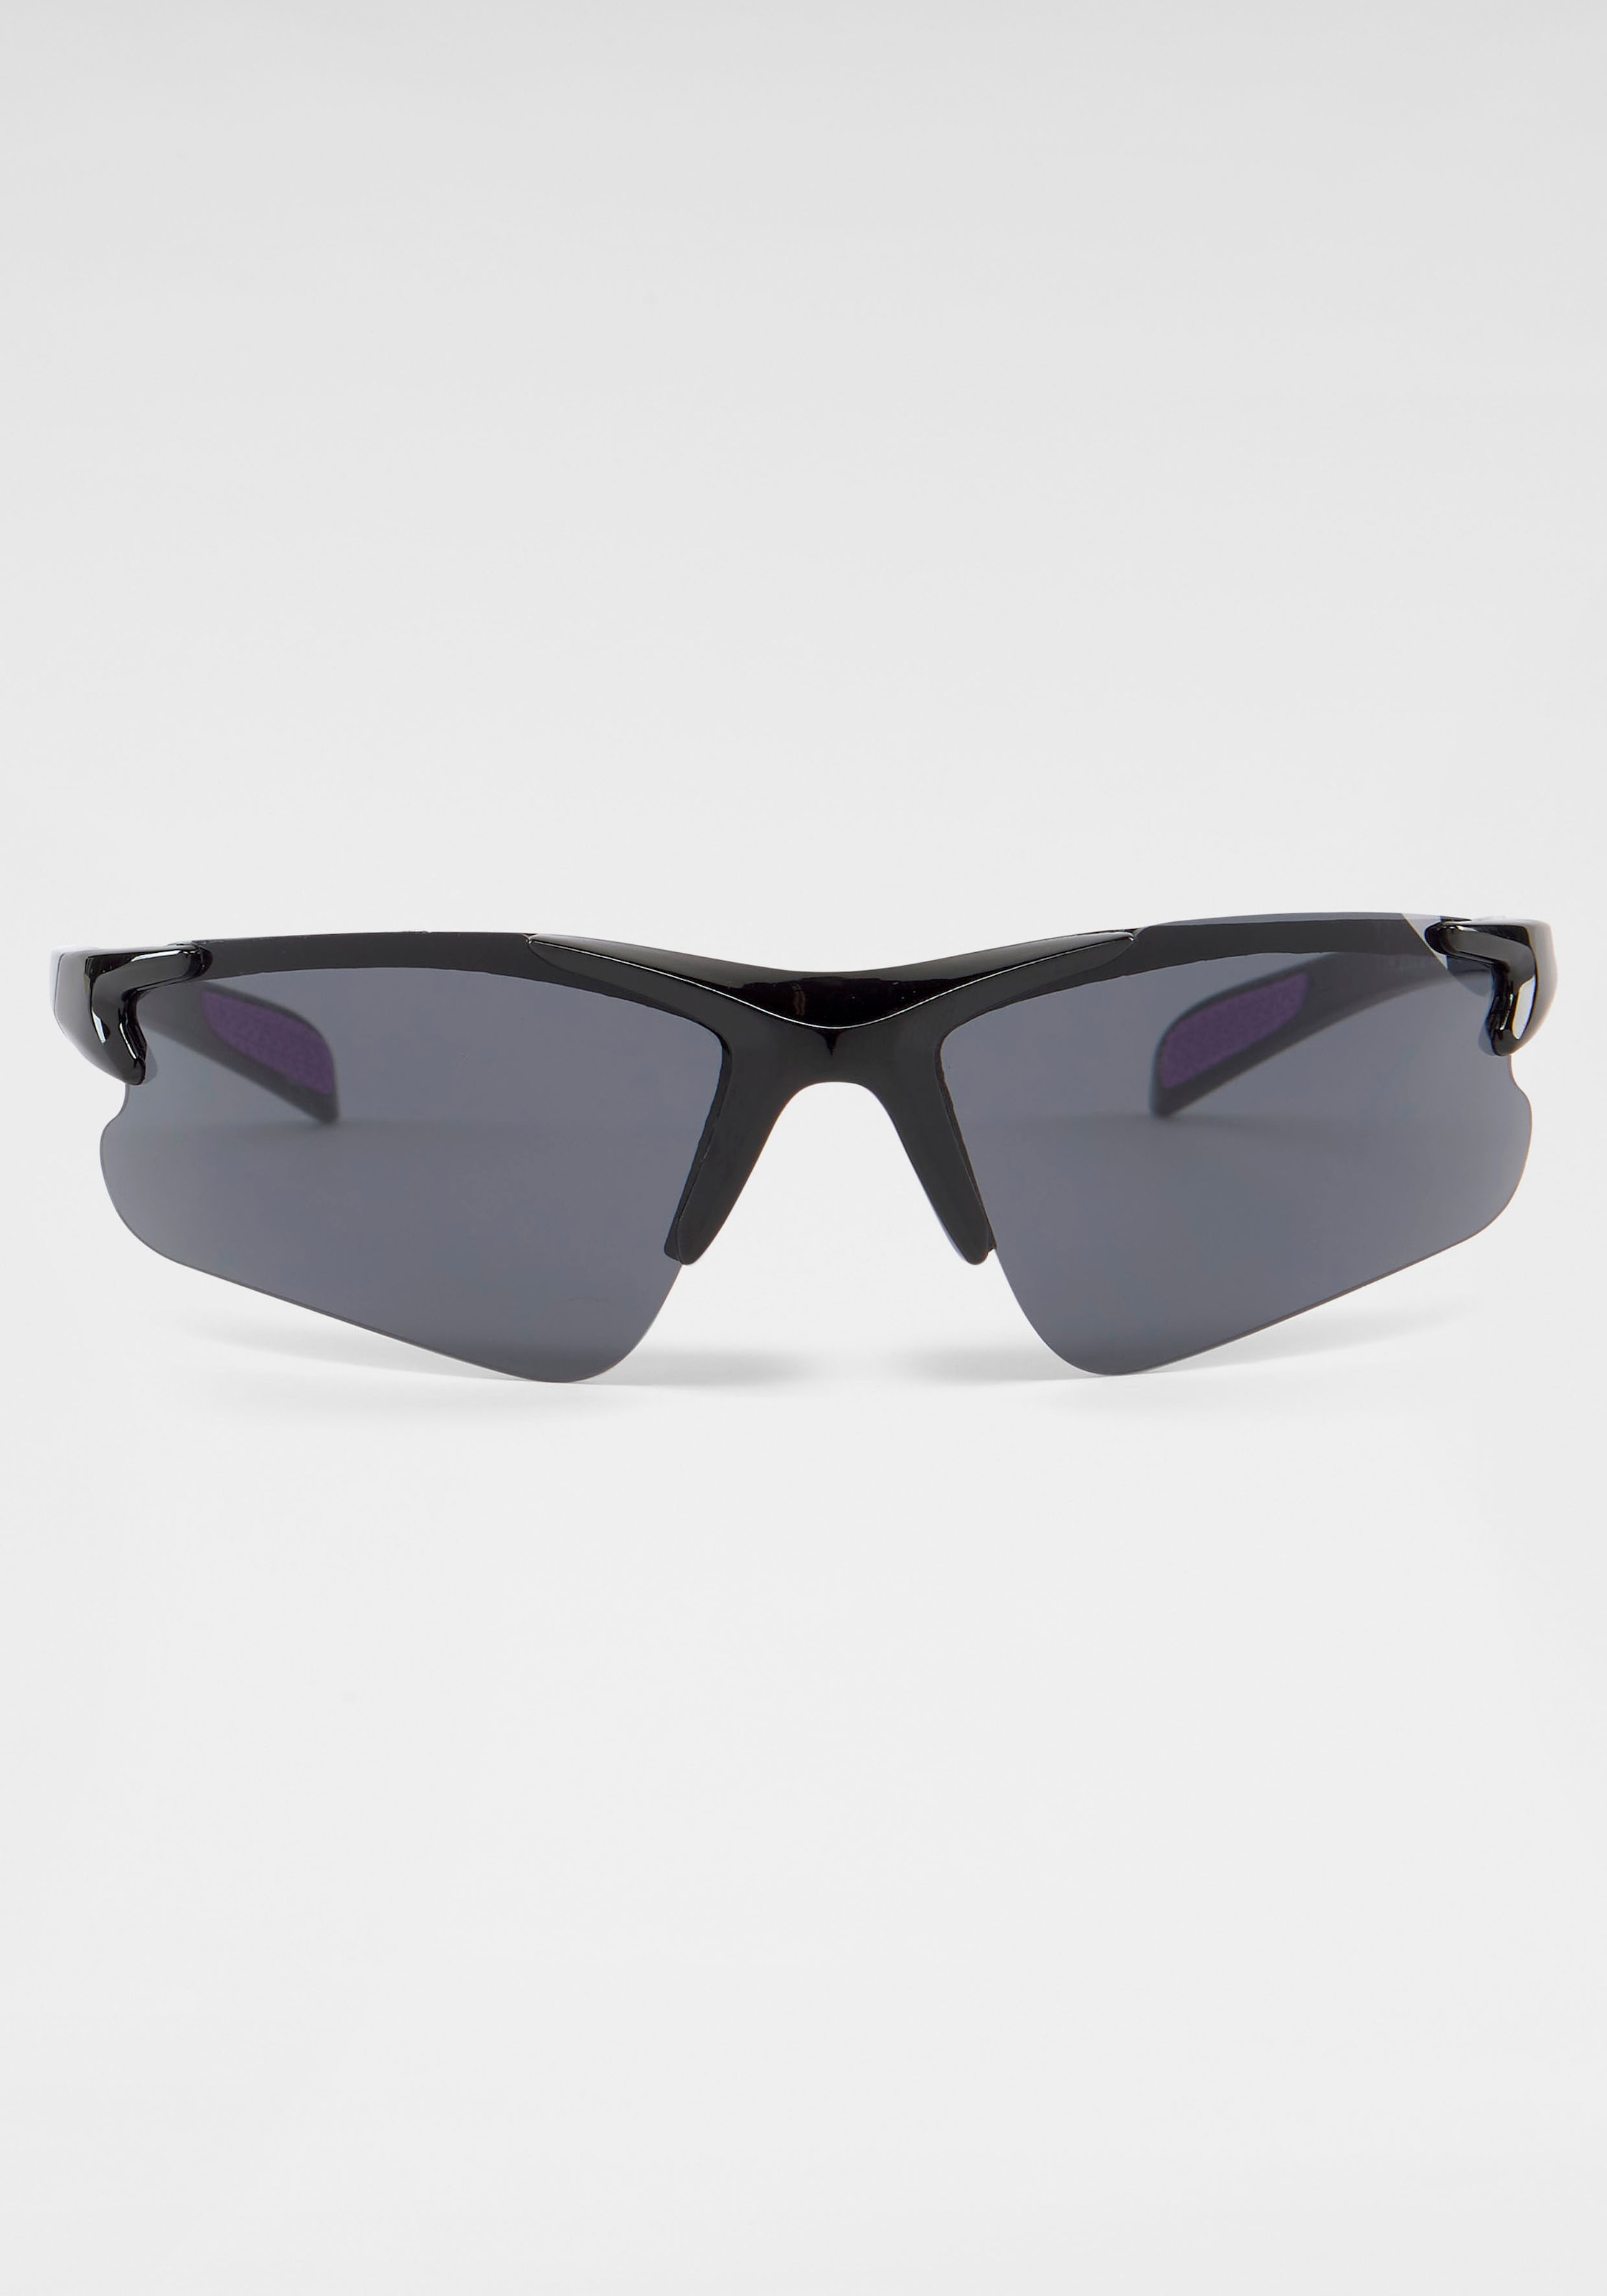 bestellen online Eyewear PRIMETTA Sonnenbrille